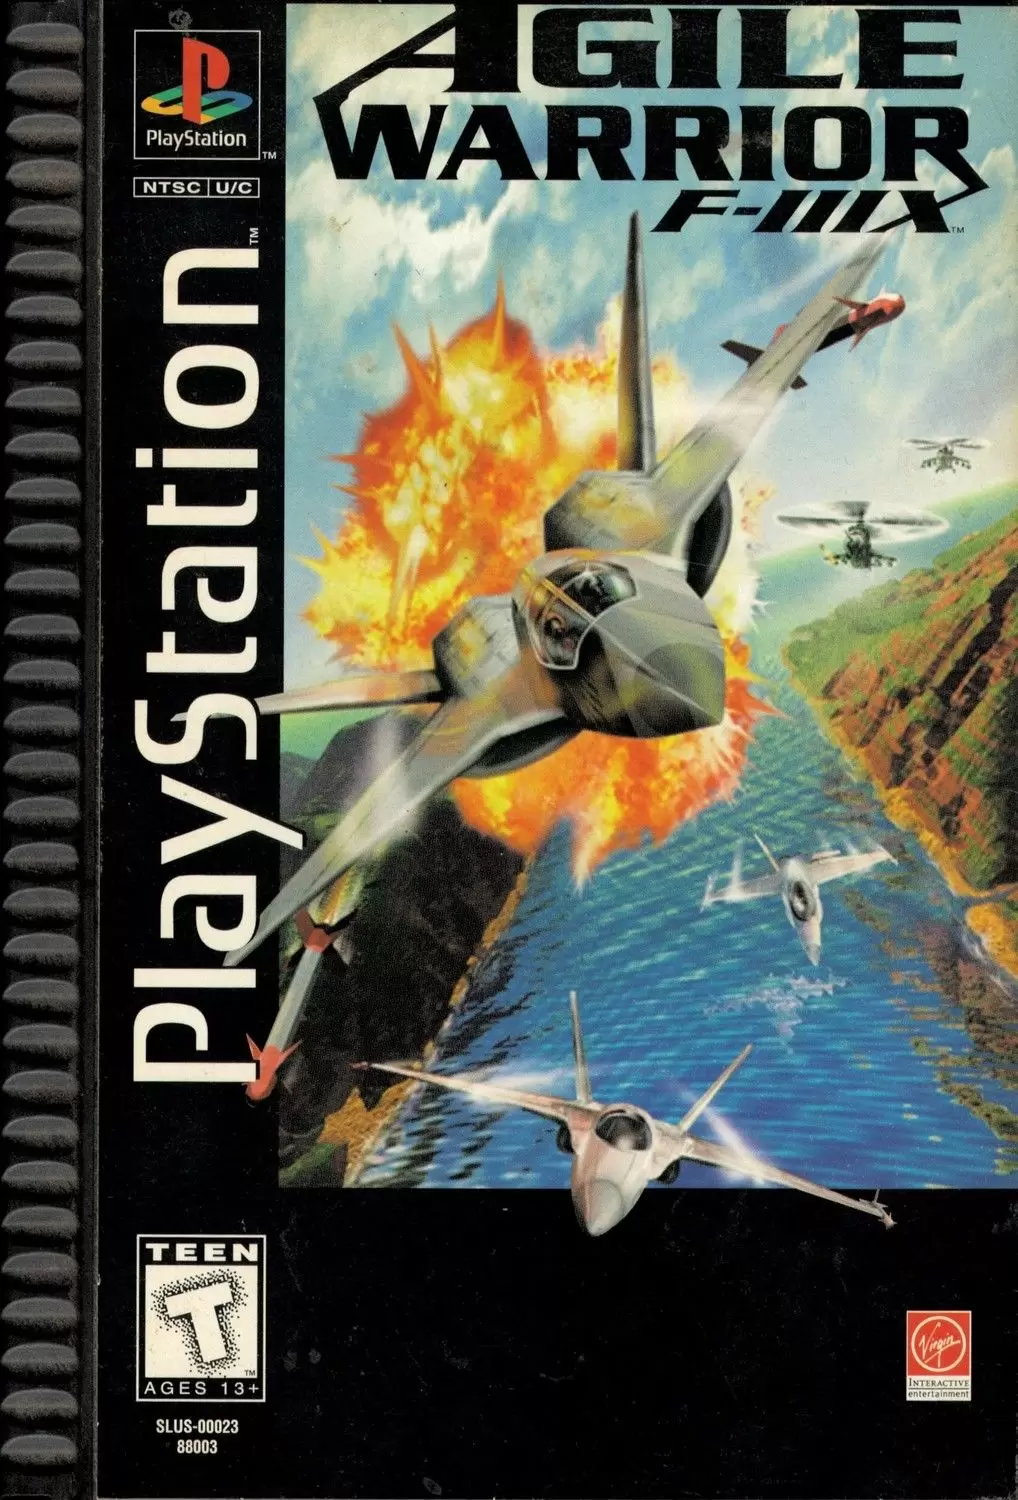 Playstation games - Agile Warrior F-111X